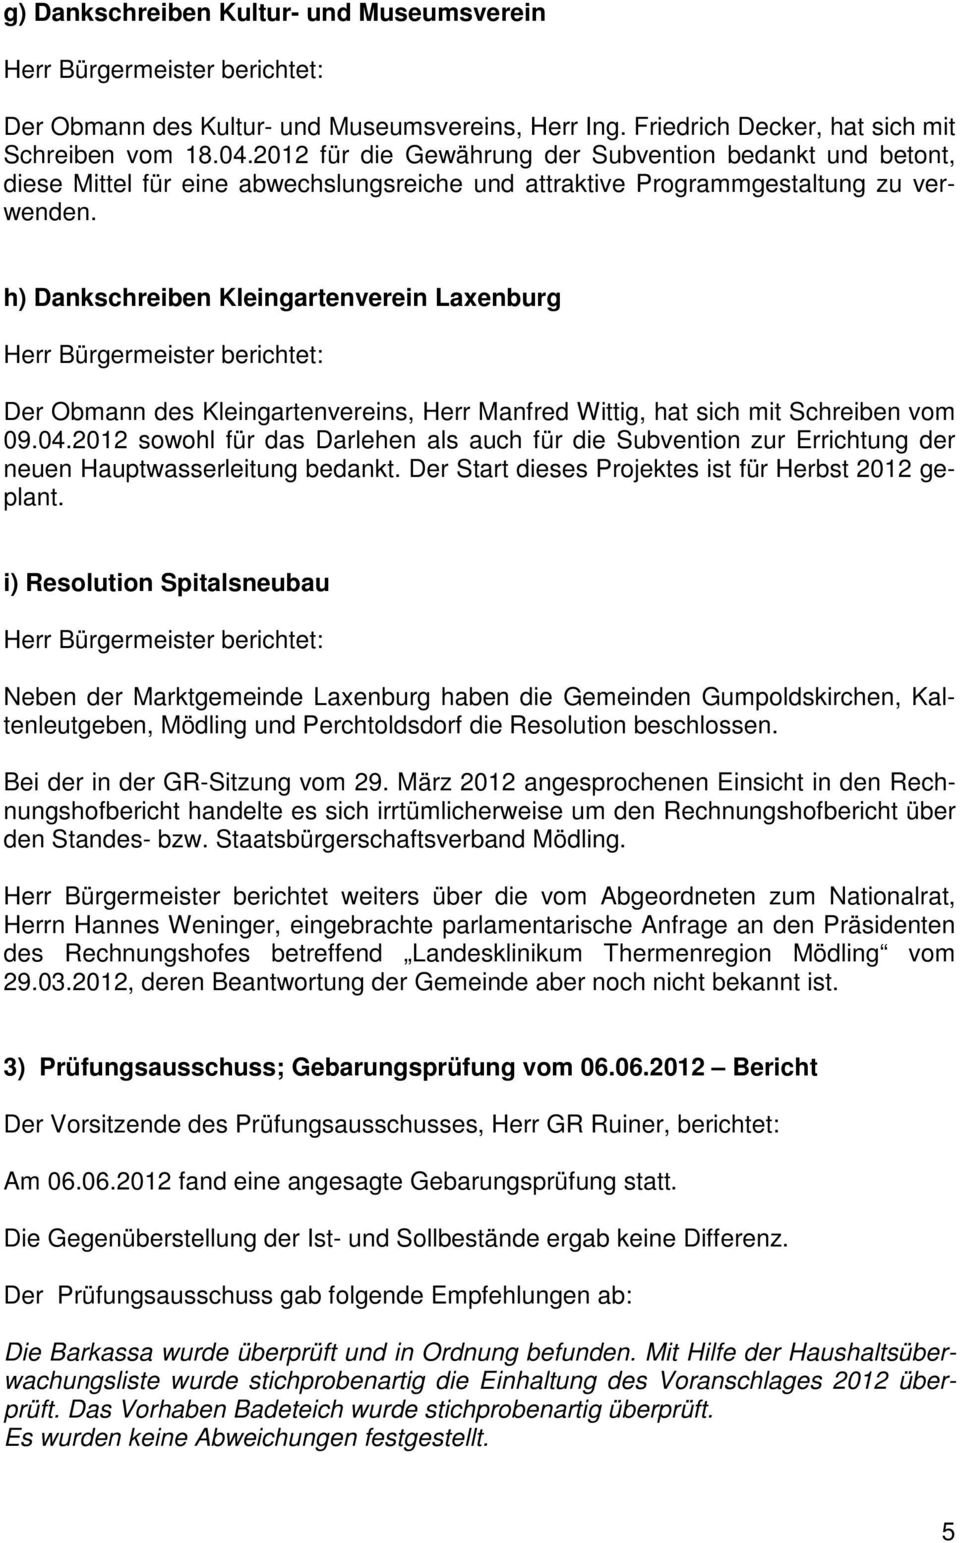 h) Dankschreiben Kleingartenverein Laxenburg Herr Bürgermeister berichtet: Der Obmann des Kleingartenvereins, Herr Manfred Wittig, hat sich mit Schreiben vom 09.04.